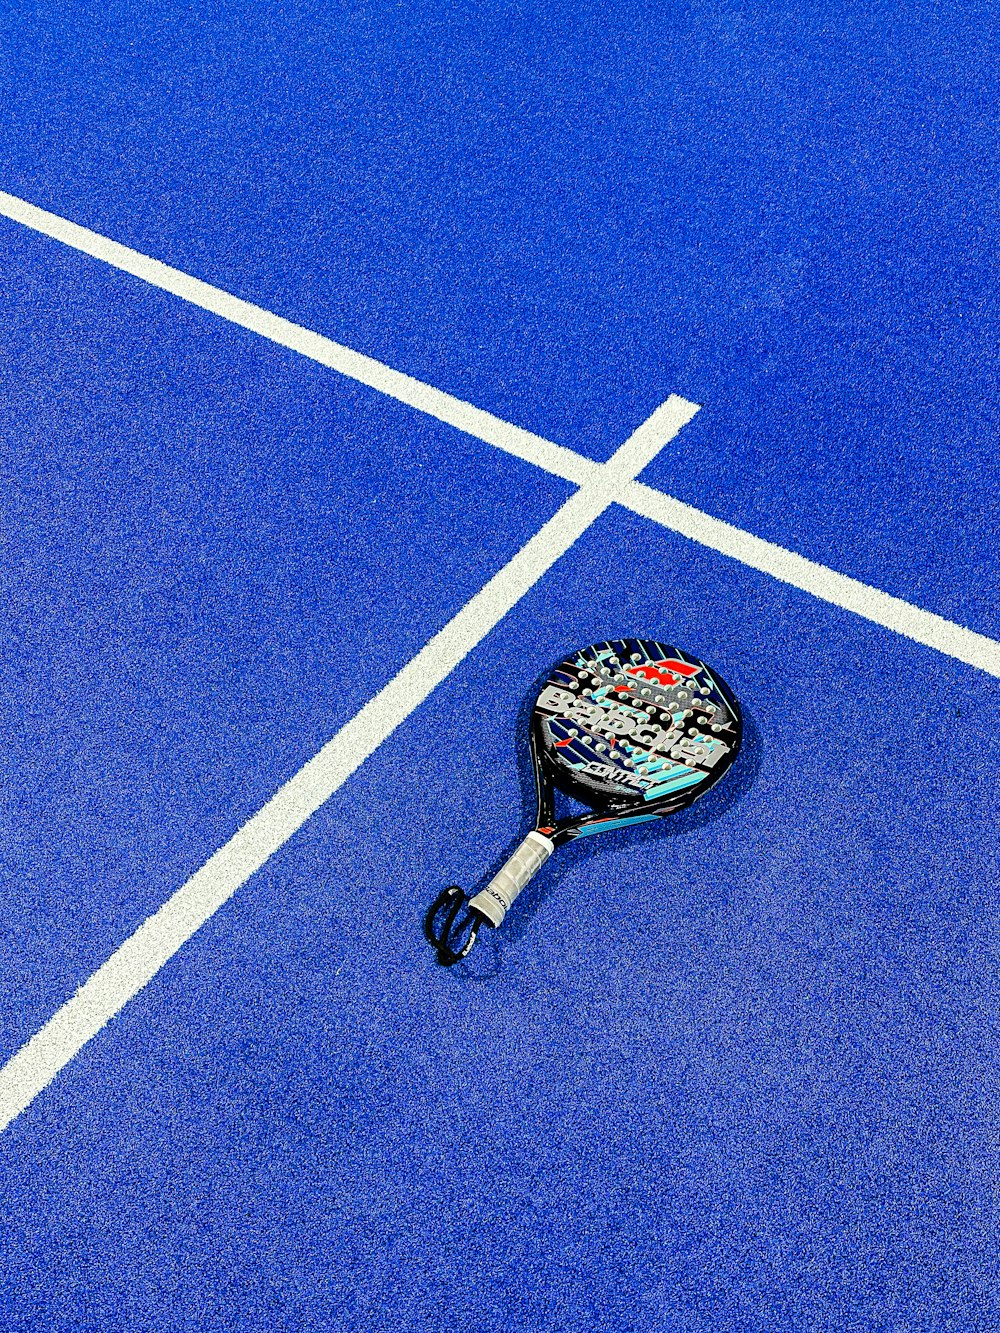 a tennis racket on a blue tennis court